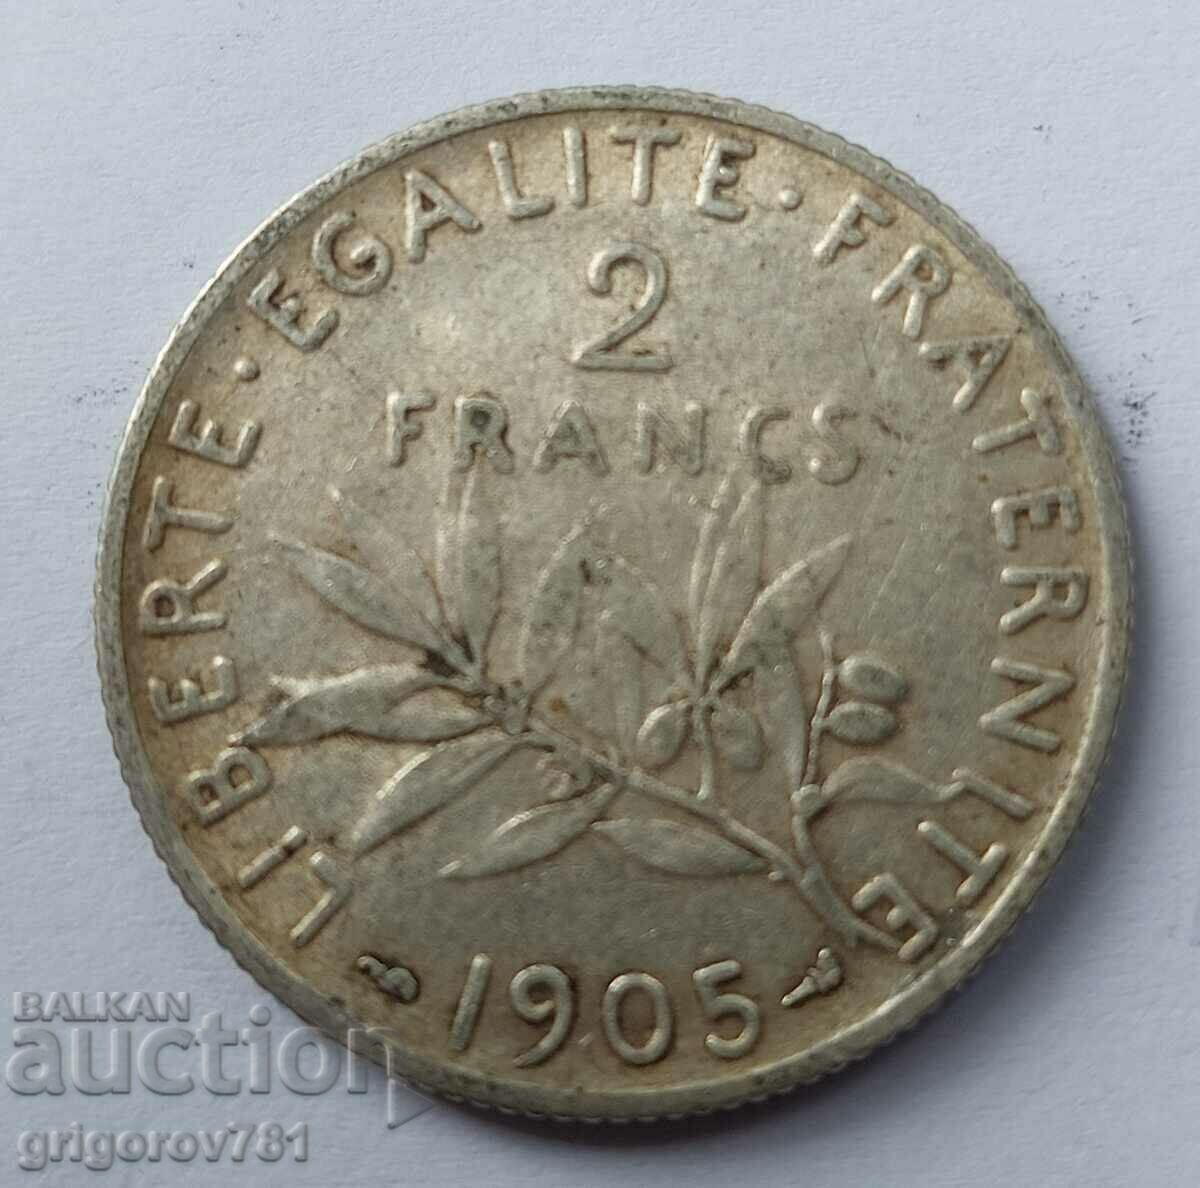 Ασημένιο 2 φράγκα Γαλλία 1905 - ασημένιο νόμισμα №19